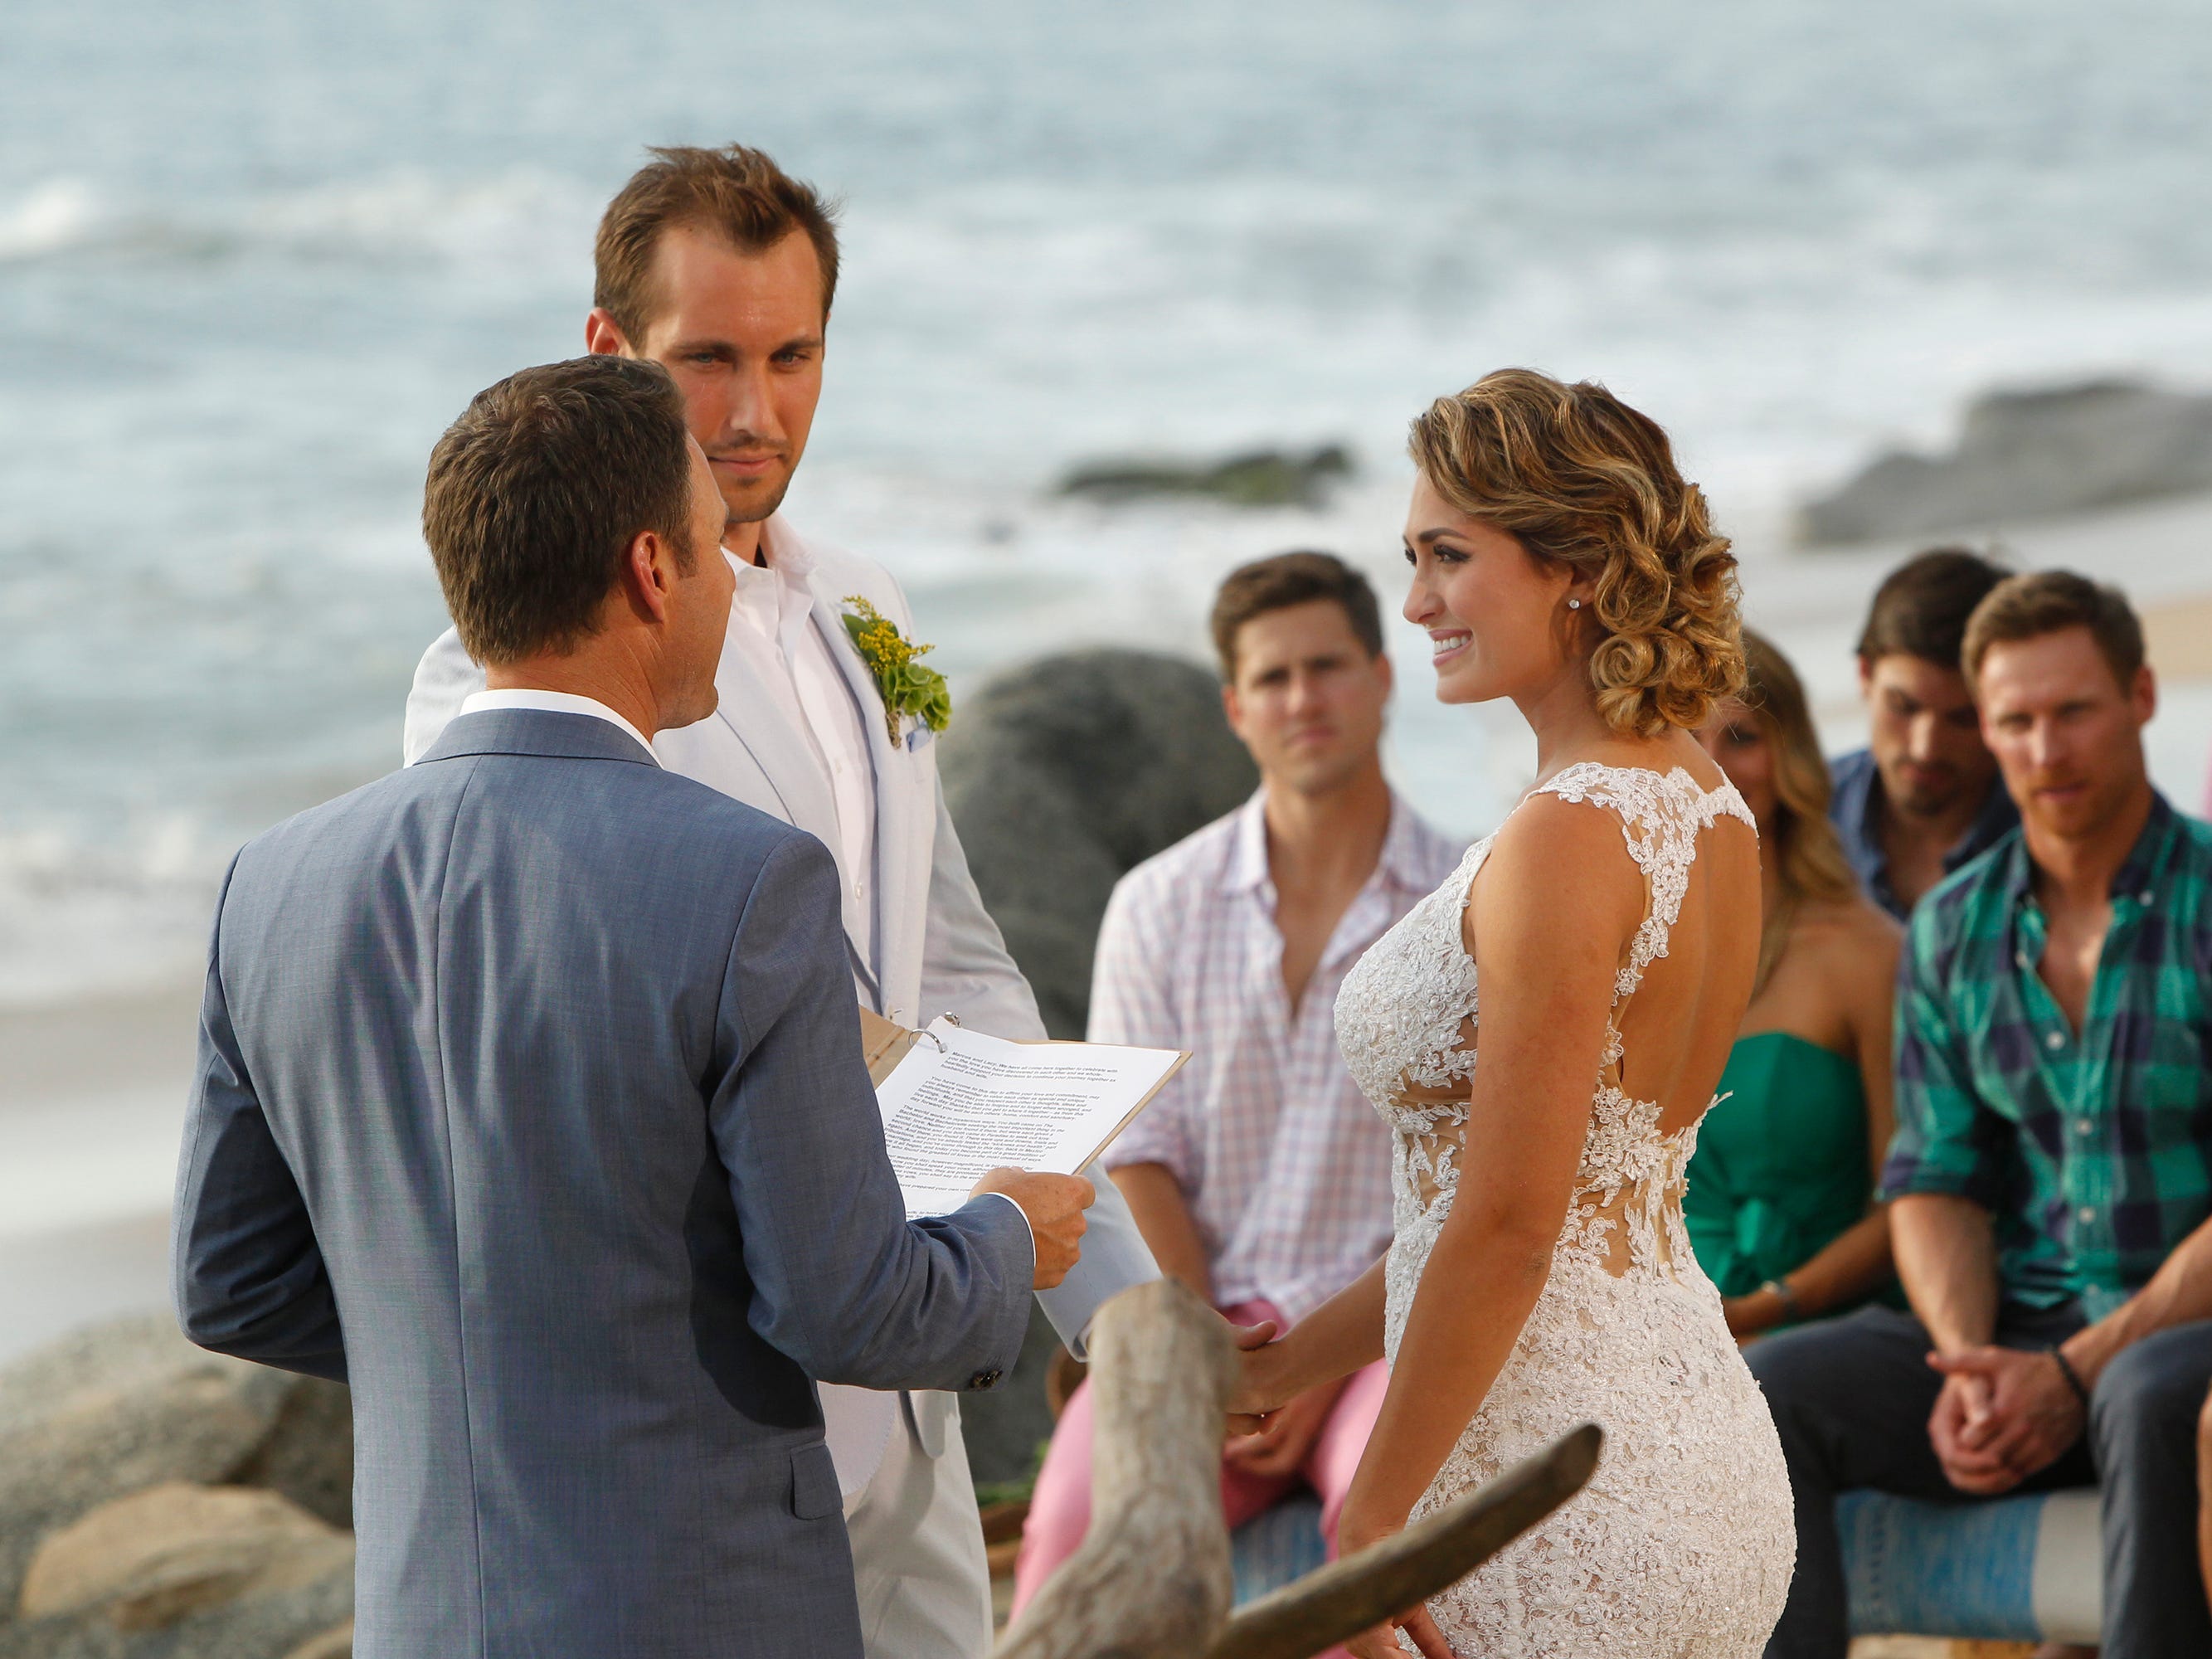 Marcus Grodd und Lacy Faddoul während ihrer Hochzeitszeremonie am Strand in Staffel 2 von „Bachelor in Paradise“.